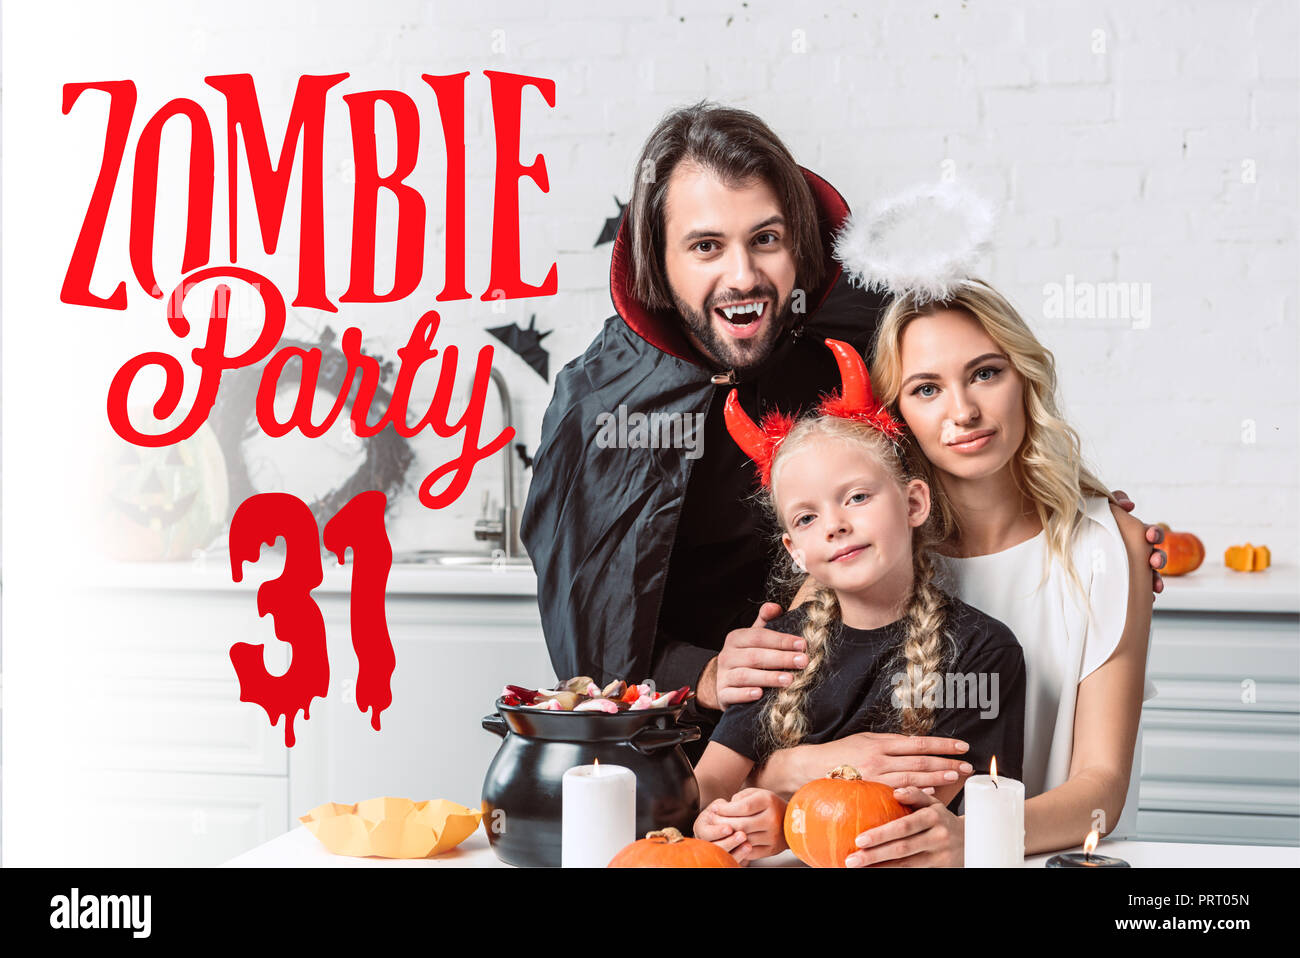 Portrait von Eltern und Tochter in Halloween Kostüme bei Tisch mit Leckereien im schwarzen Topf in der Küche zu Hause mit 'Zombie party 31'-Schriftzug Stockfoto